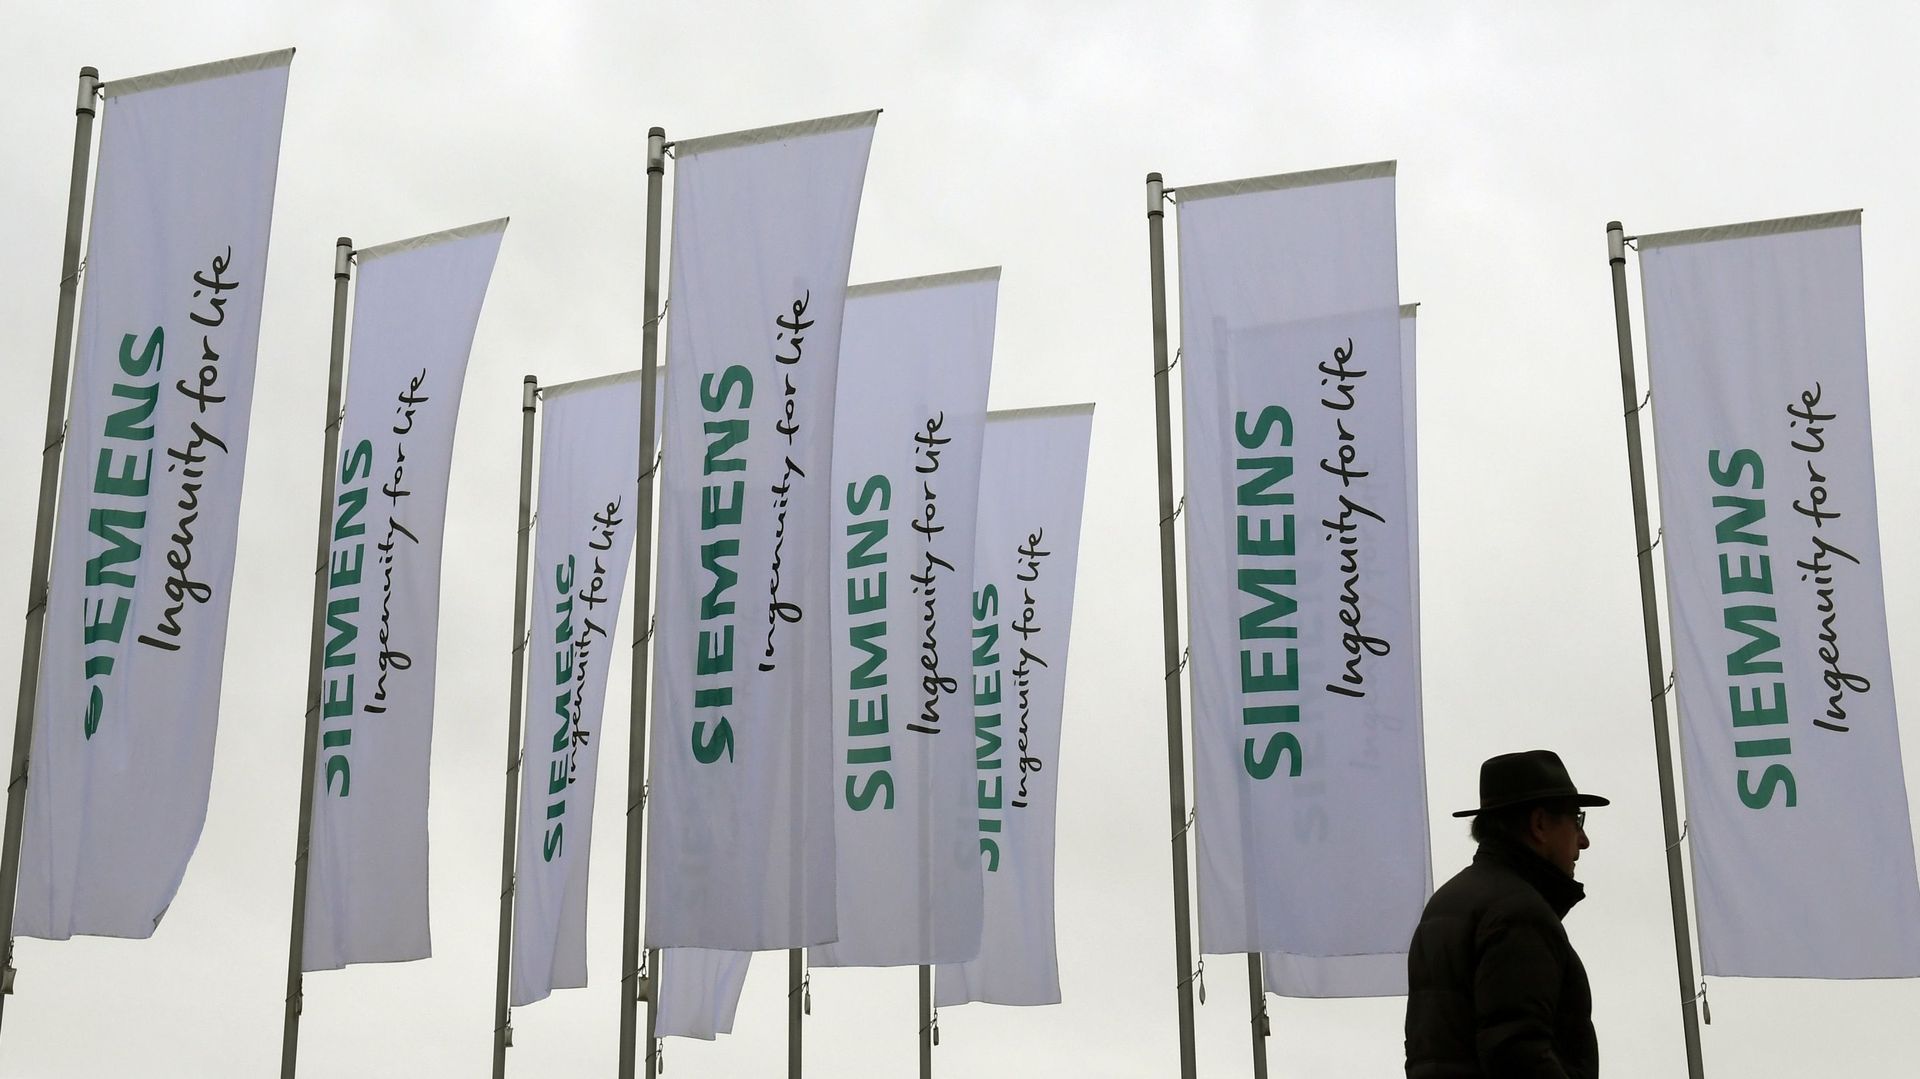 Le géant allemand Siemens absorbe définitivement la liégeoise Samtech